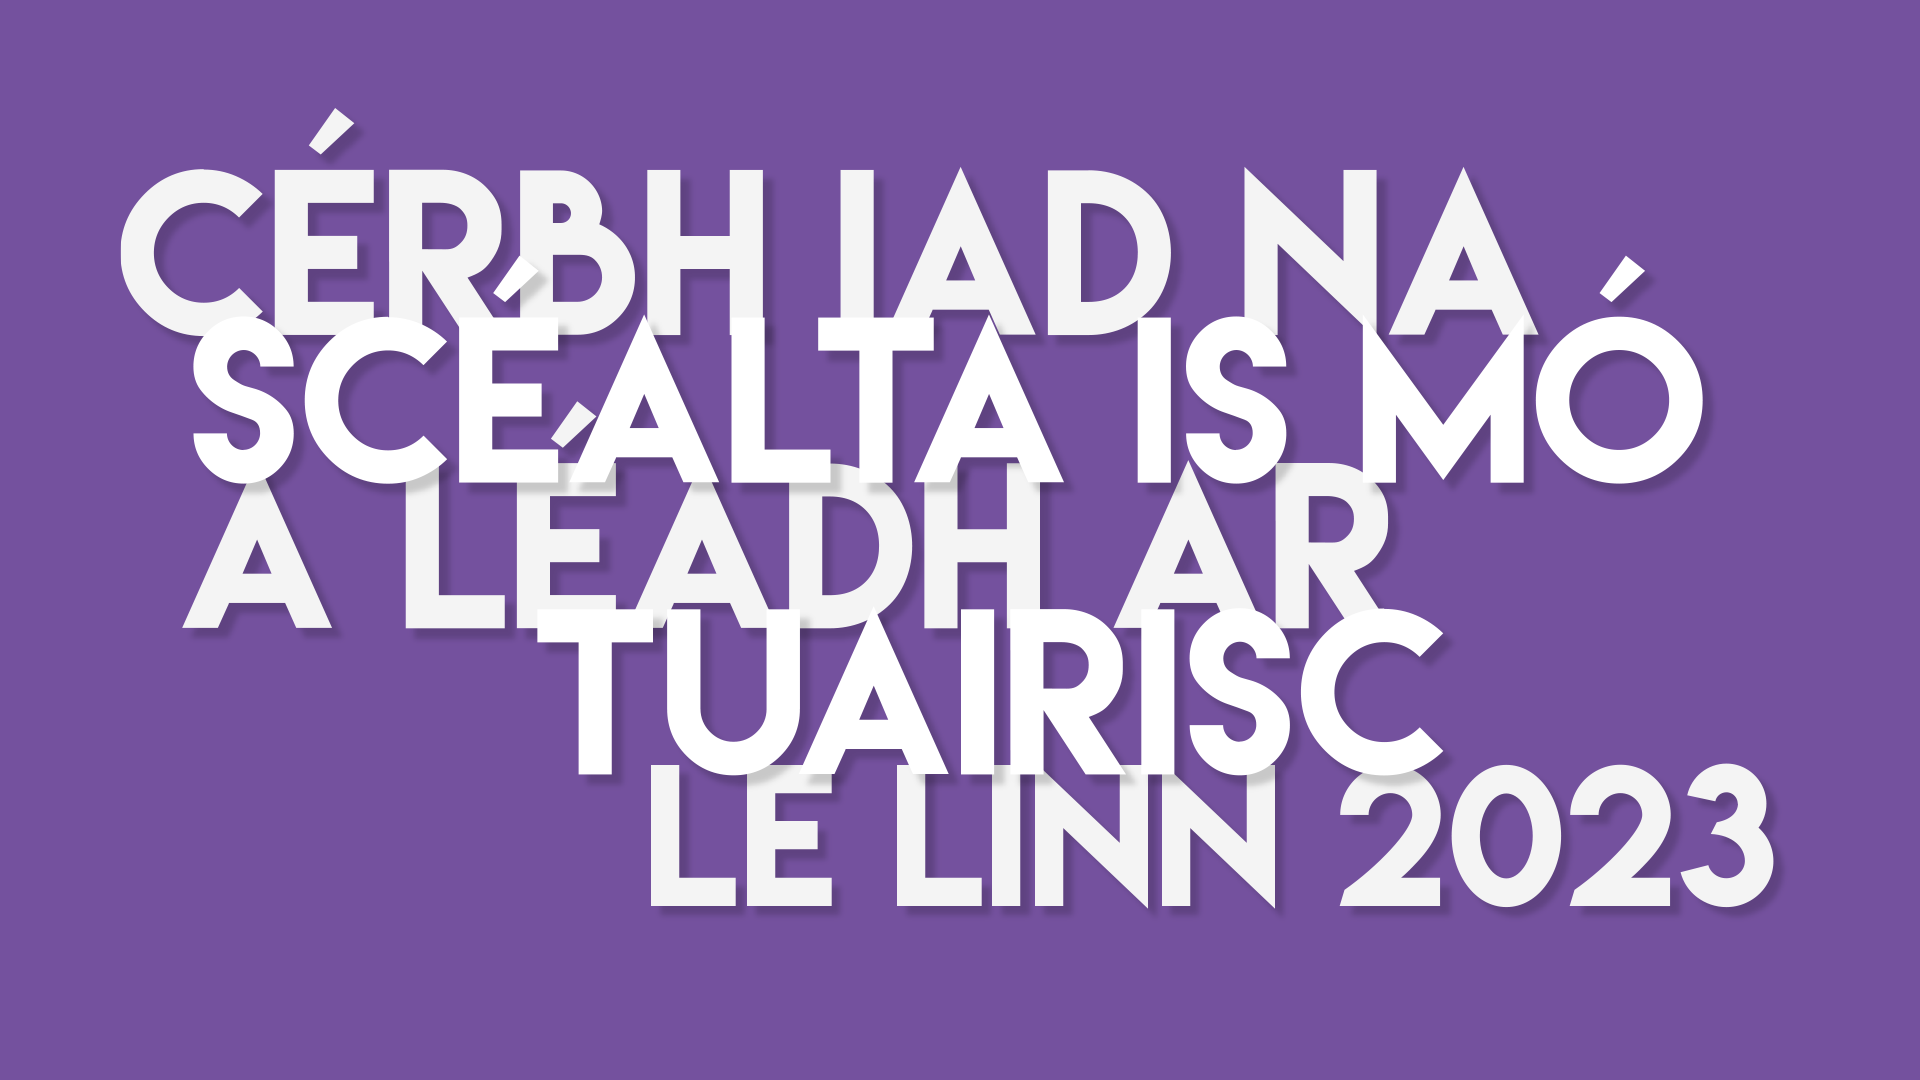 Cérbh iad na scéalta is mó ó shaol na Gaeilge agus na Gaeltachta a léadh ar Tuairisc le linn 2023? (11 go dtí 1)